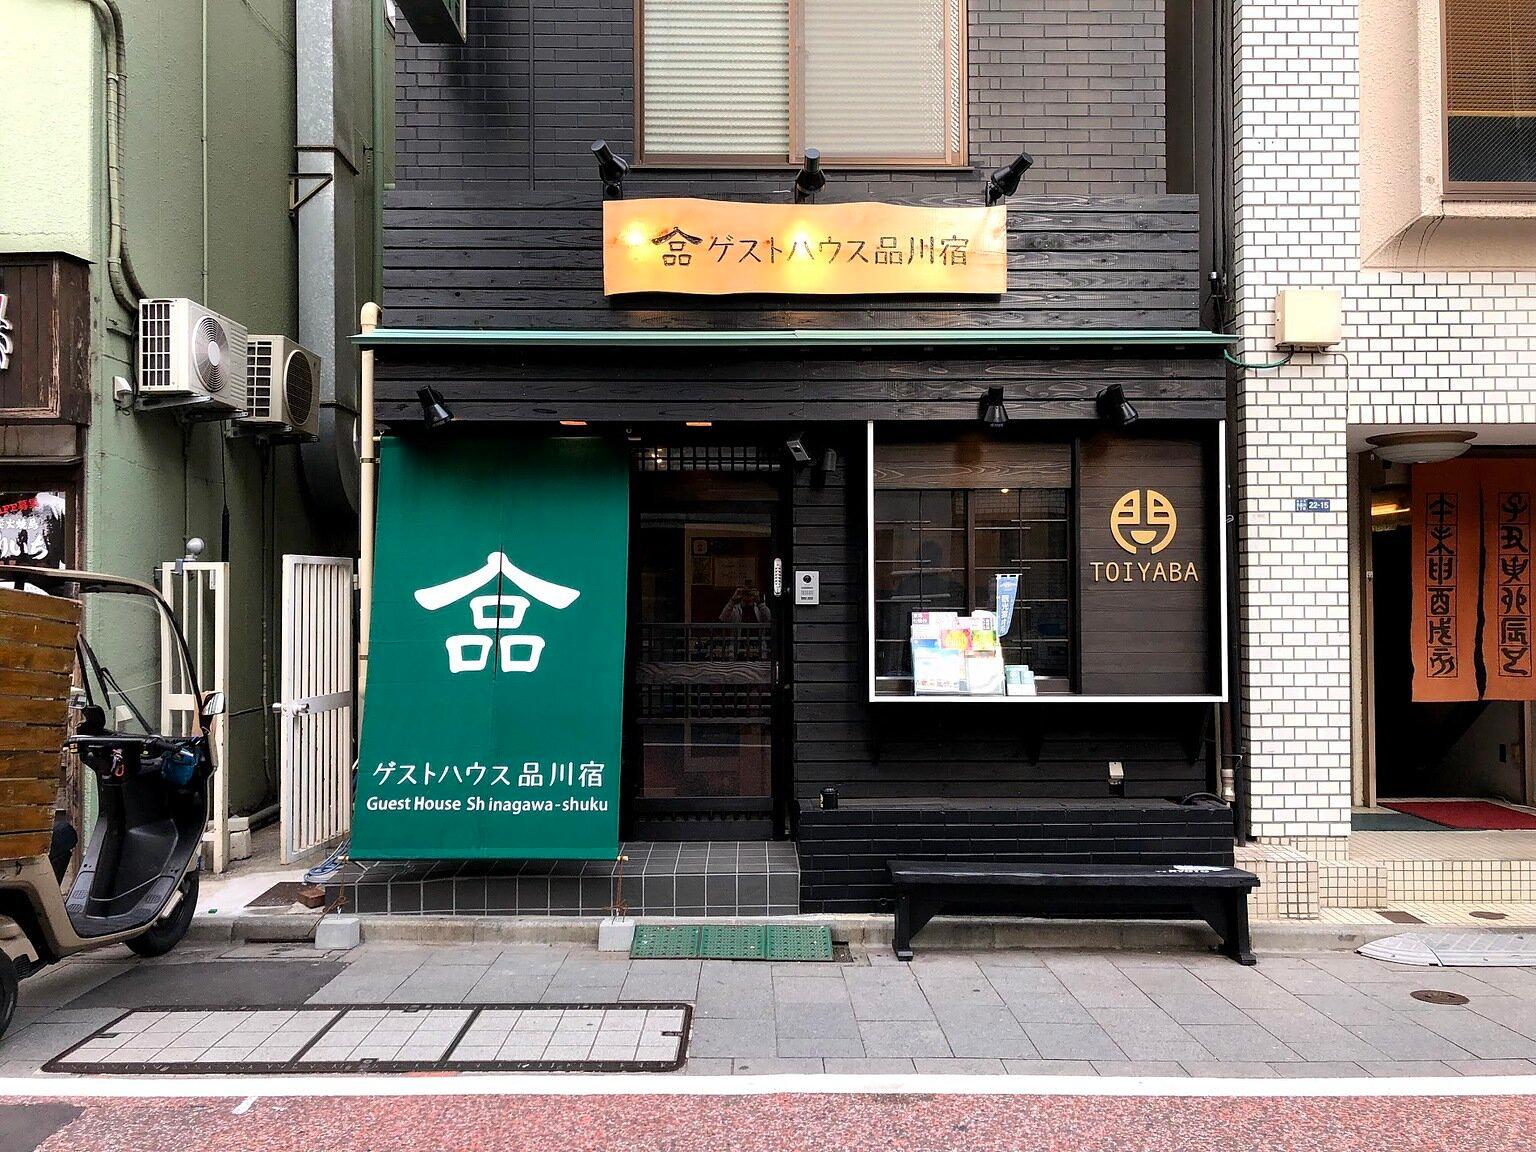 Guest House Shinagawa-juku